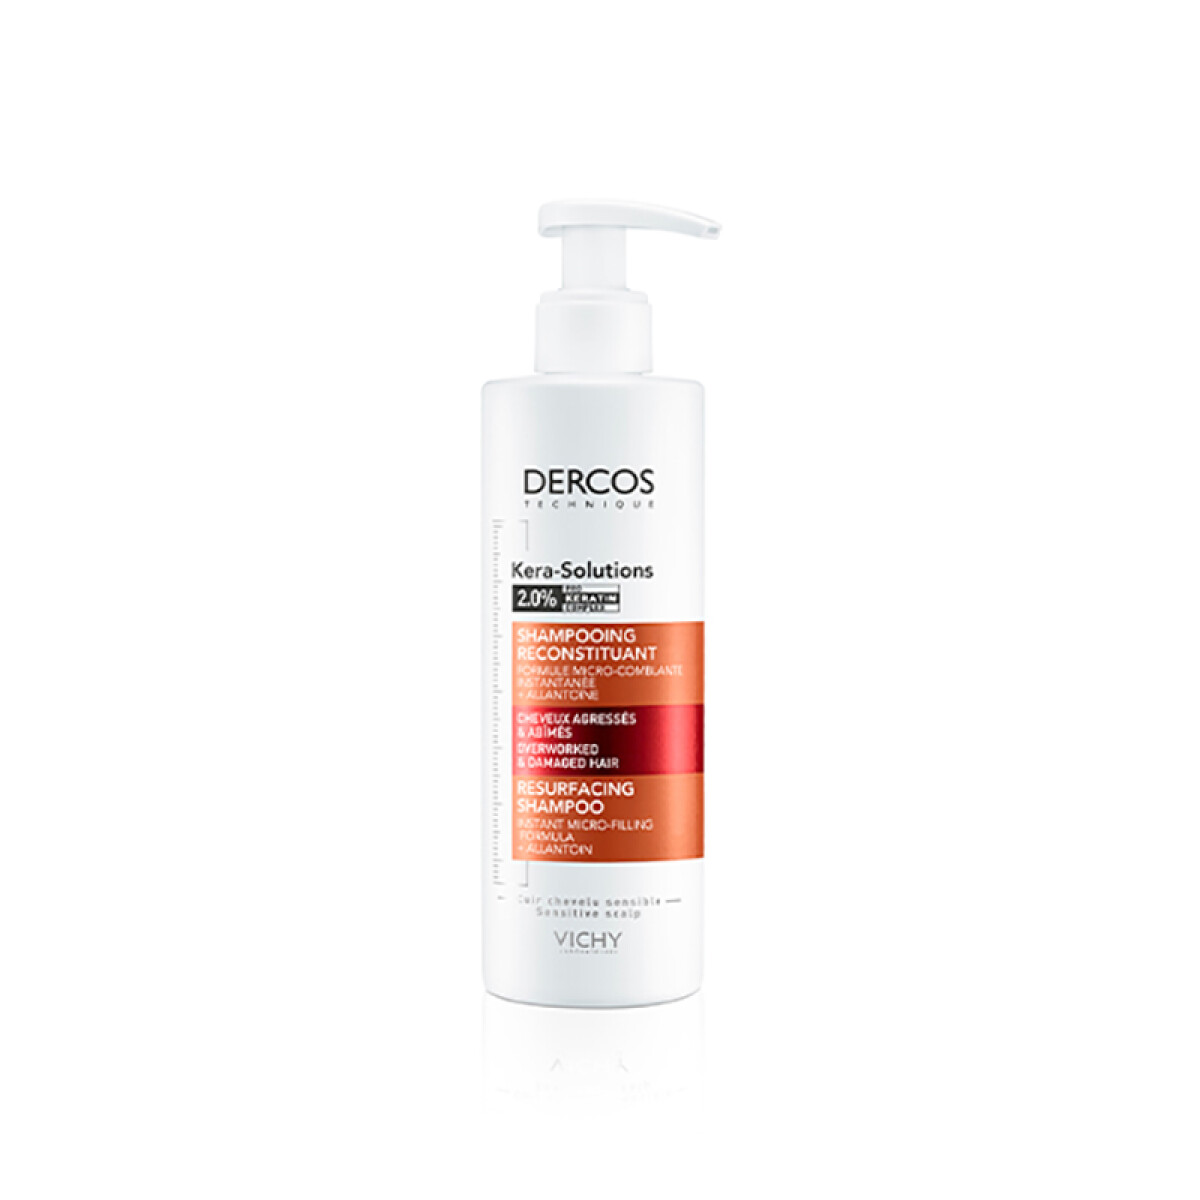 Vichy shampoo línea Dercos - Kera Solutions reconstituyente 